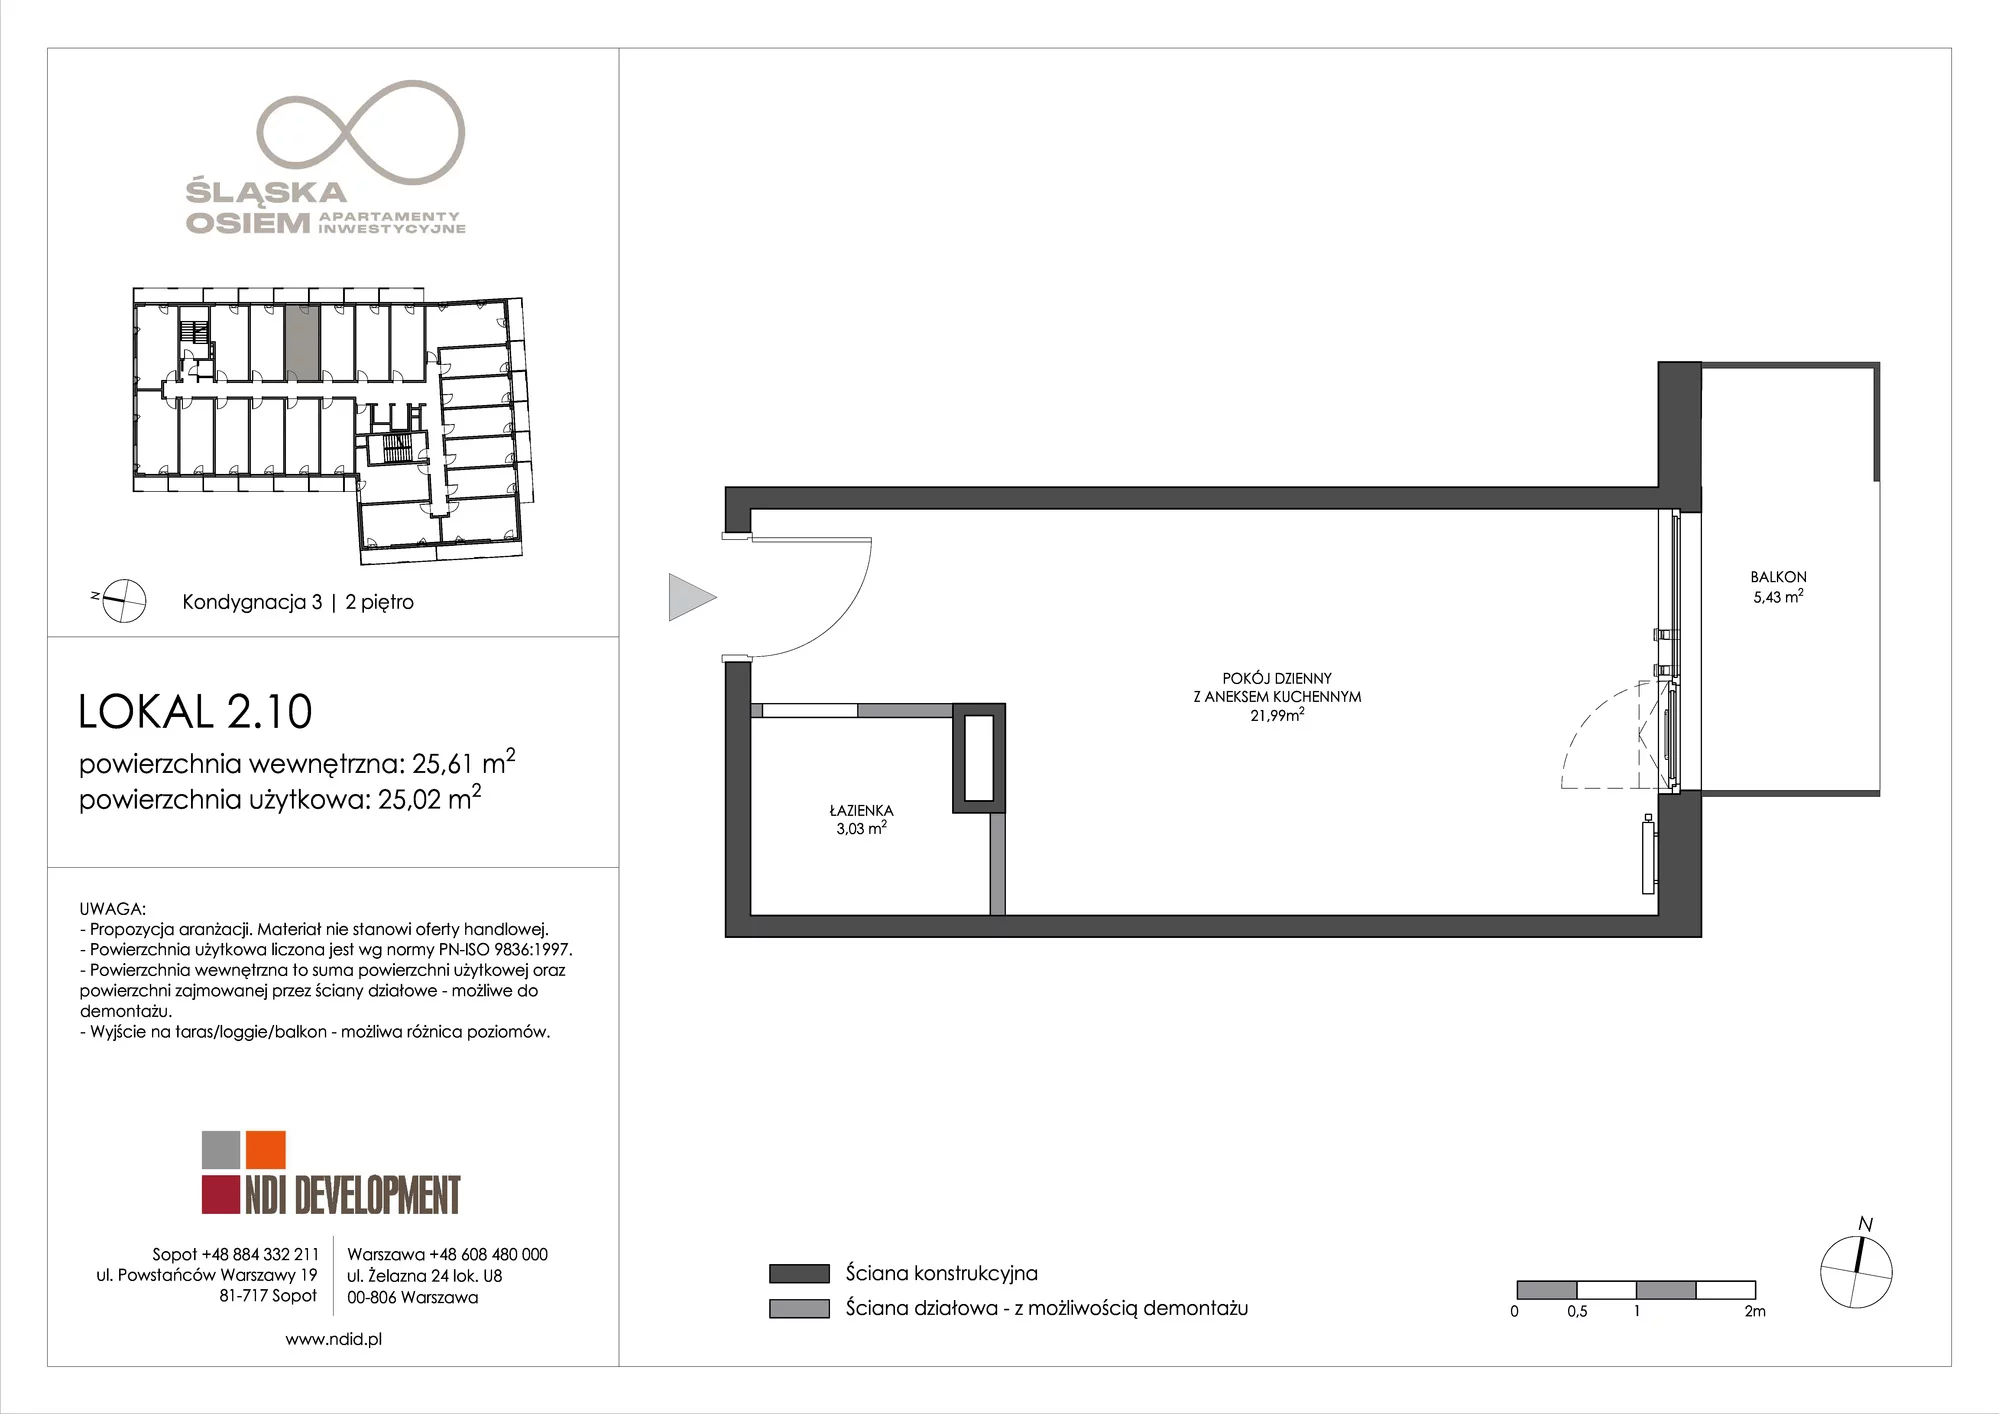 Apartament inwestycyjny 25,61 m², piętro 2, oferta nr 2.10, Śląska Osiem, Gdańsk, Przymorze, ul. Śląska 8